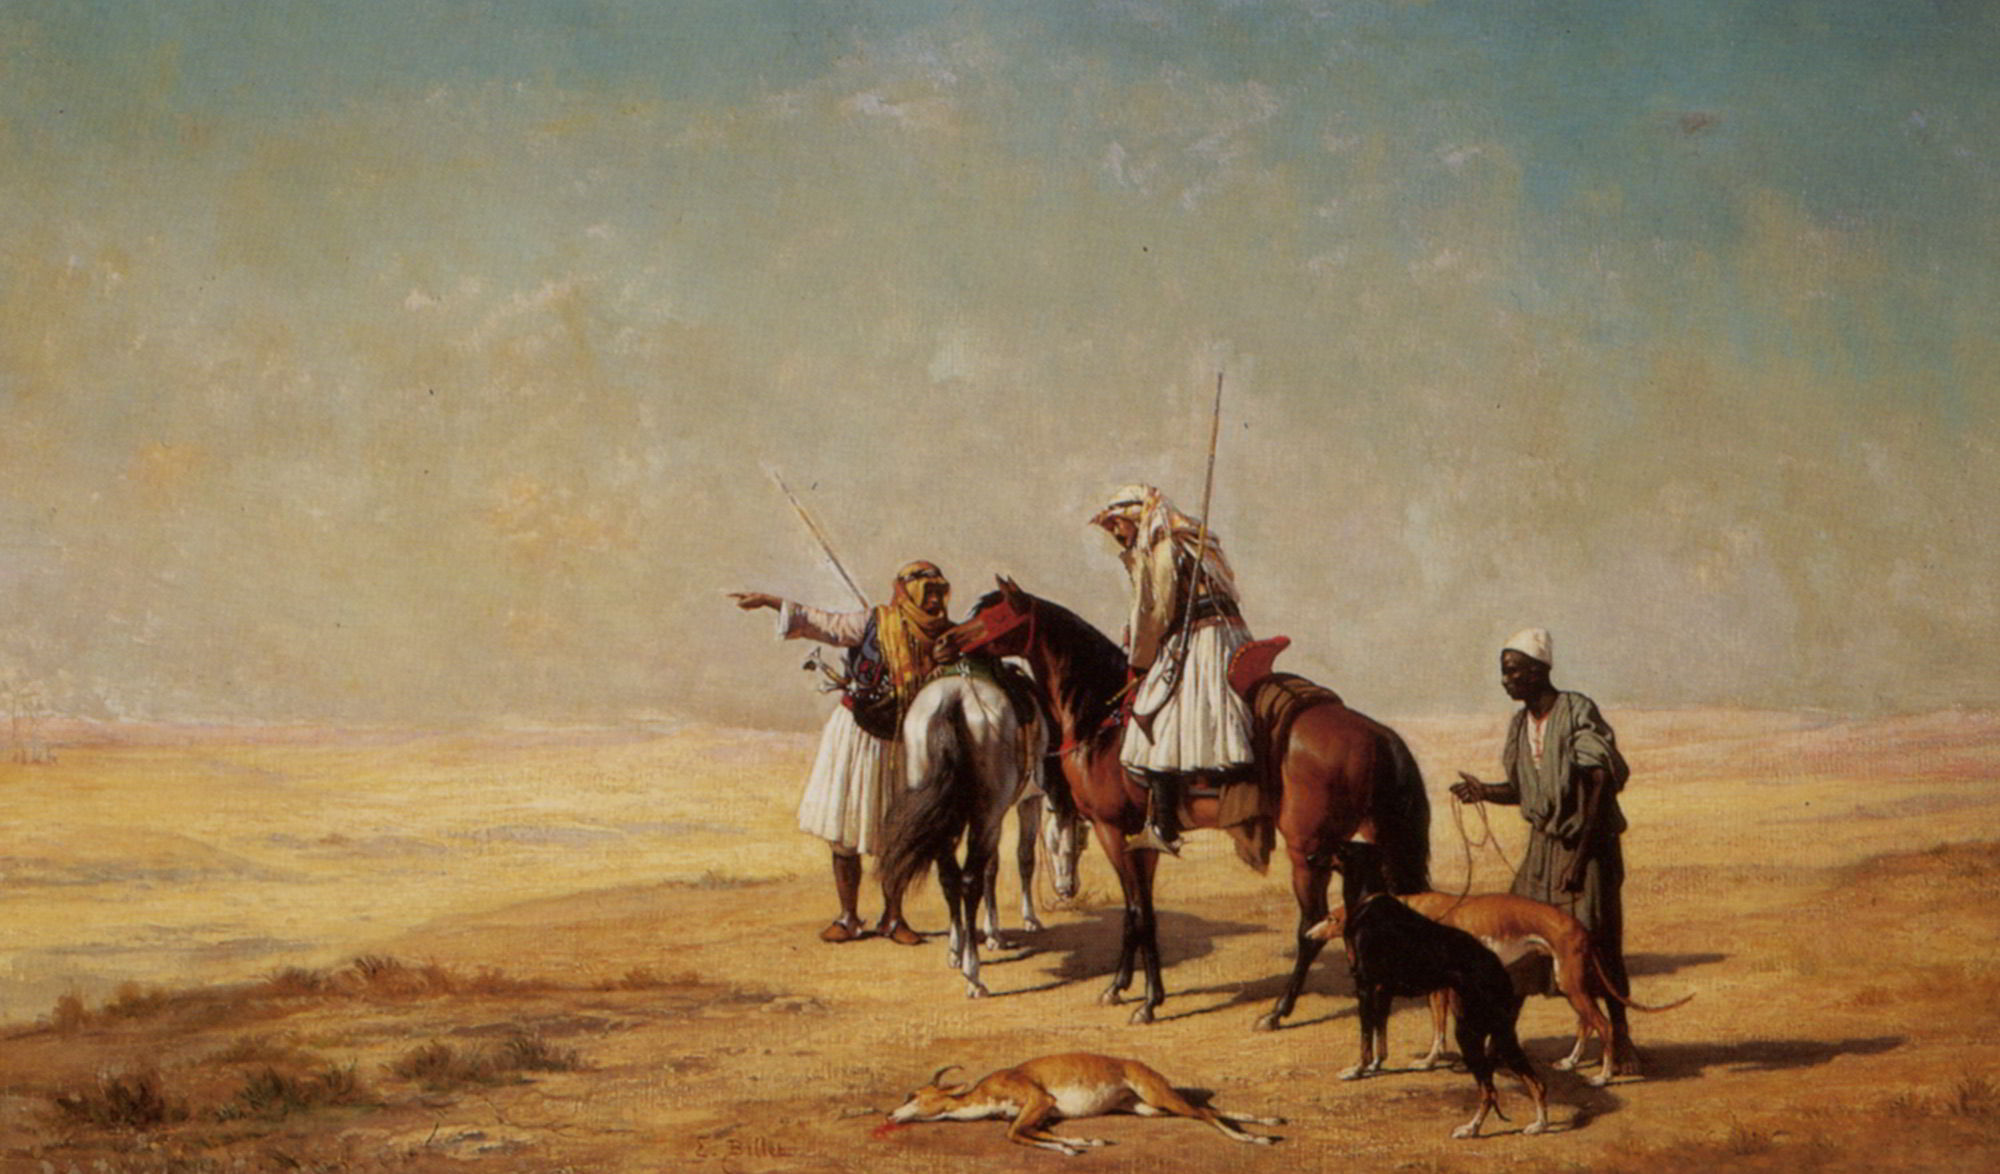 Arabs in the Desert by Etienne Billet